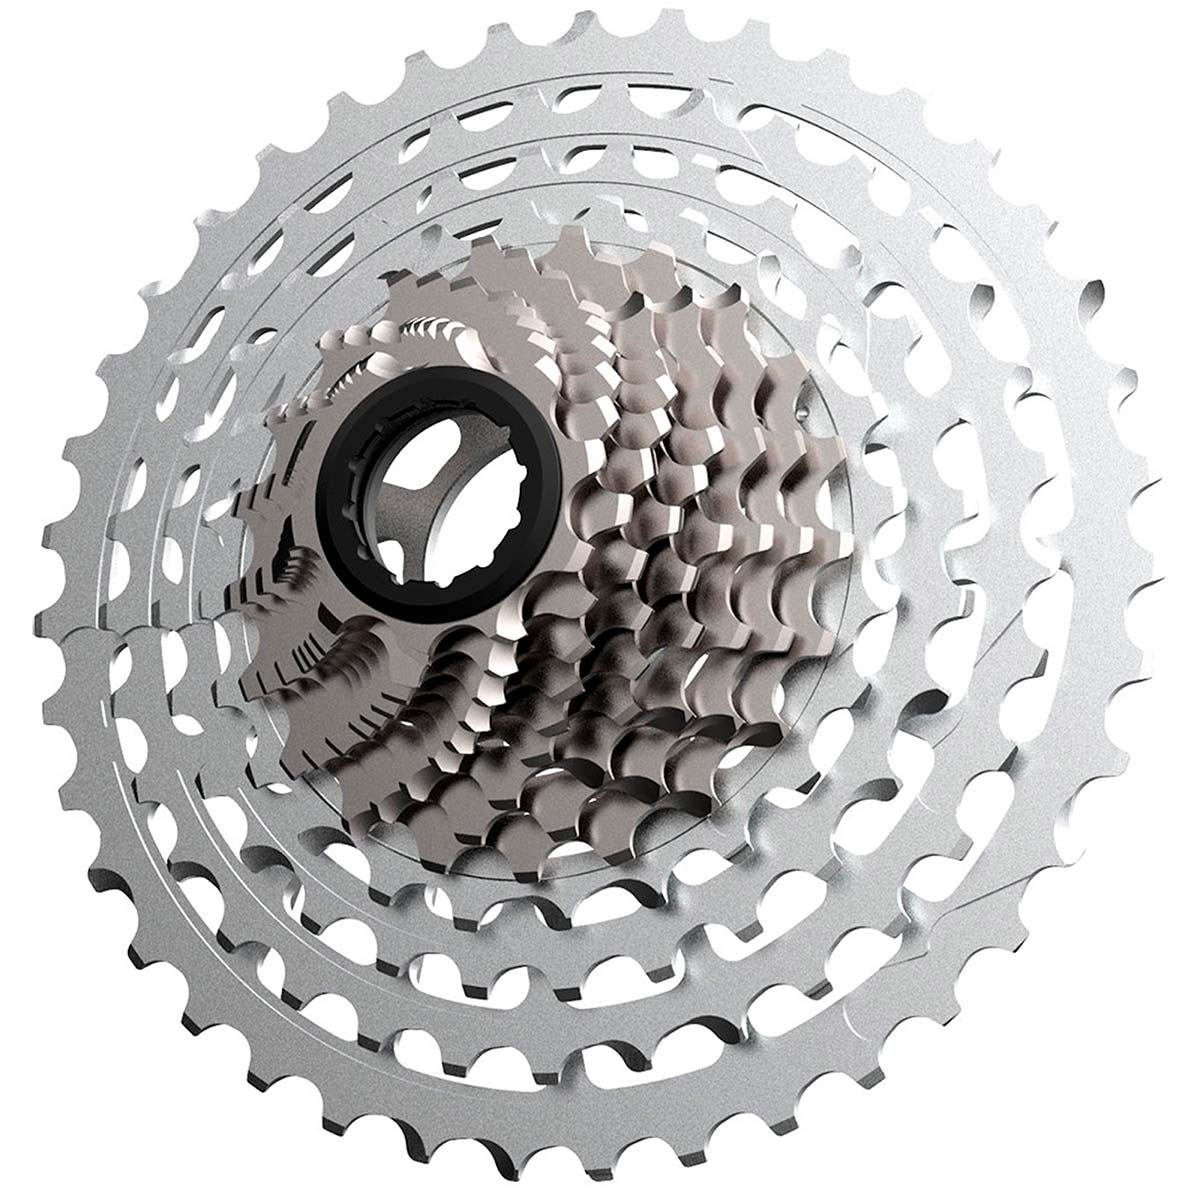 En TodoMountainBike: Rotor presenta su grupo 1x13 TT, específico para bicicletas de Triatlón